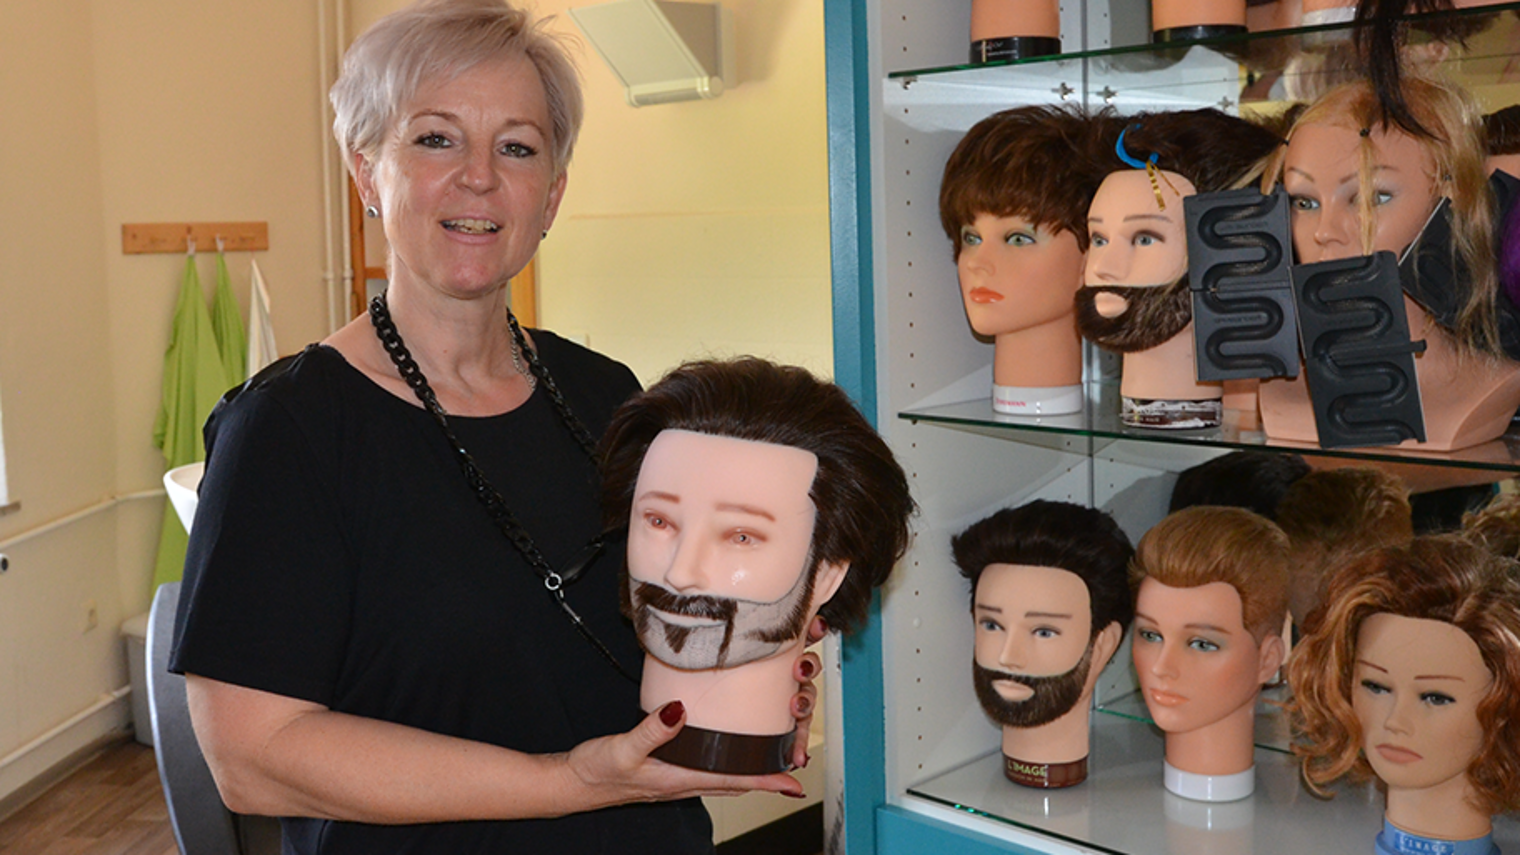 Als Innungsobermeisterin will Anja Schultka junge Menschen für das Friseurhandwerk begeistern und die Qualität der Berufsausbildung sichern